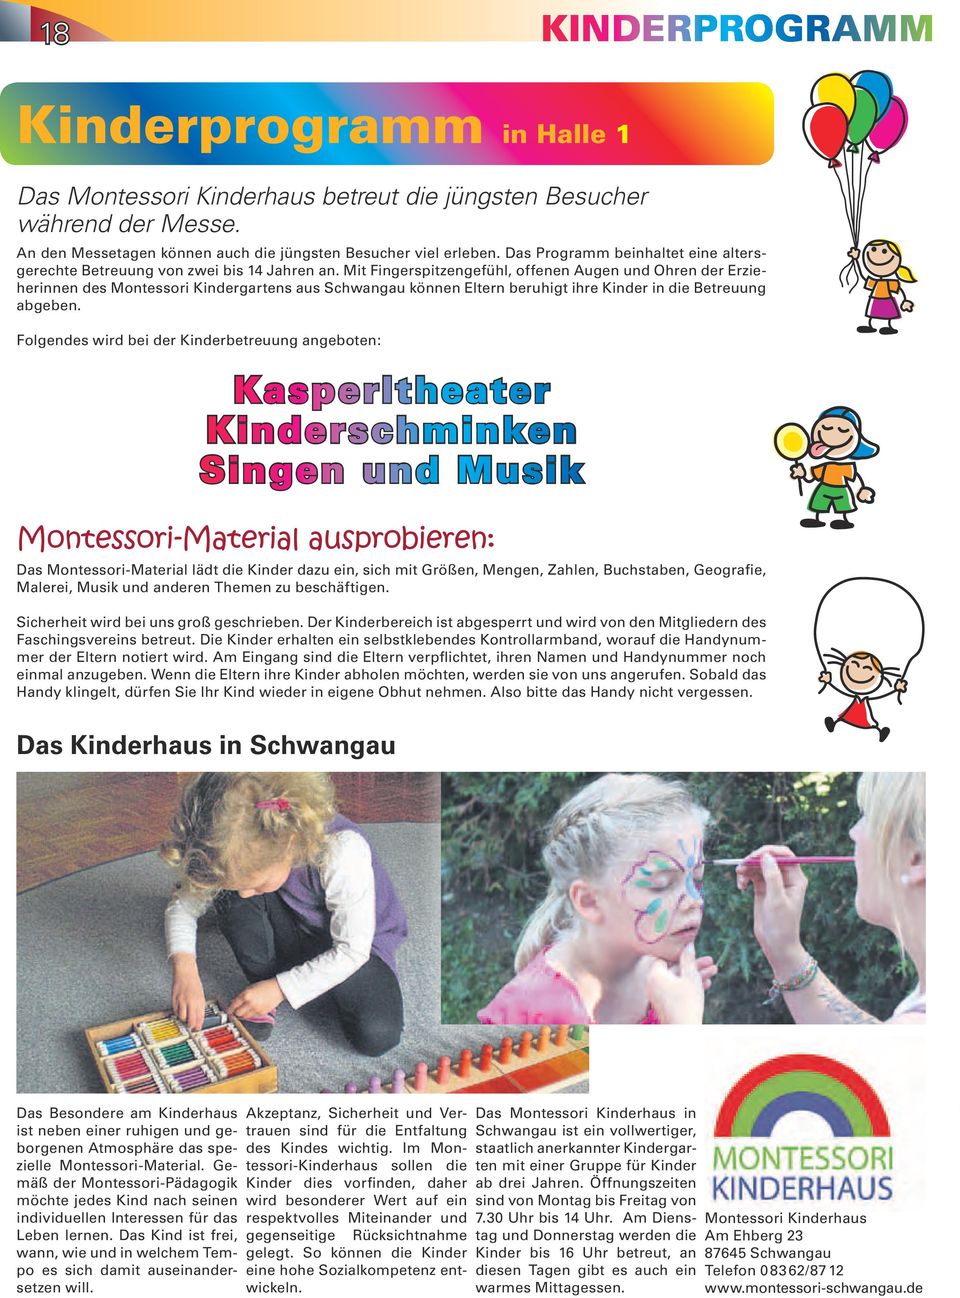 Mit Fingerspitzengefühl, offenen Augen und Ohren der Erzieherinnen des Montessori Kindergartens aus Schwangau können Eltern beruhigt ihre Kinder in die Betreuung abgeben.